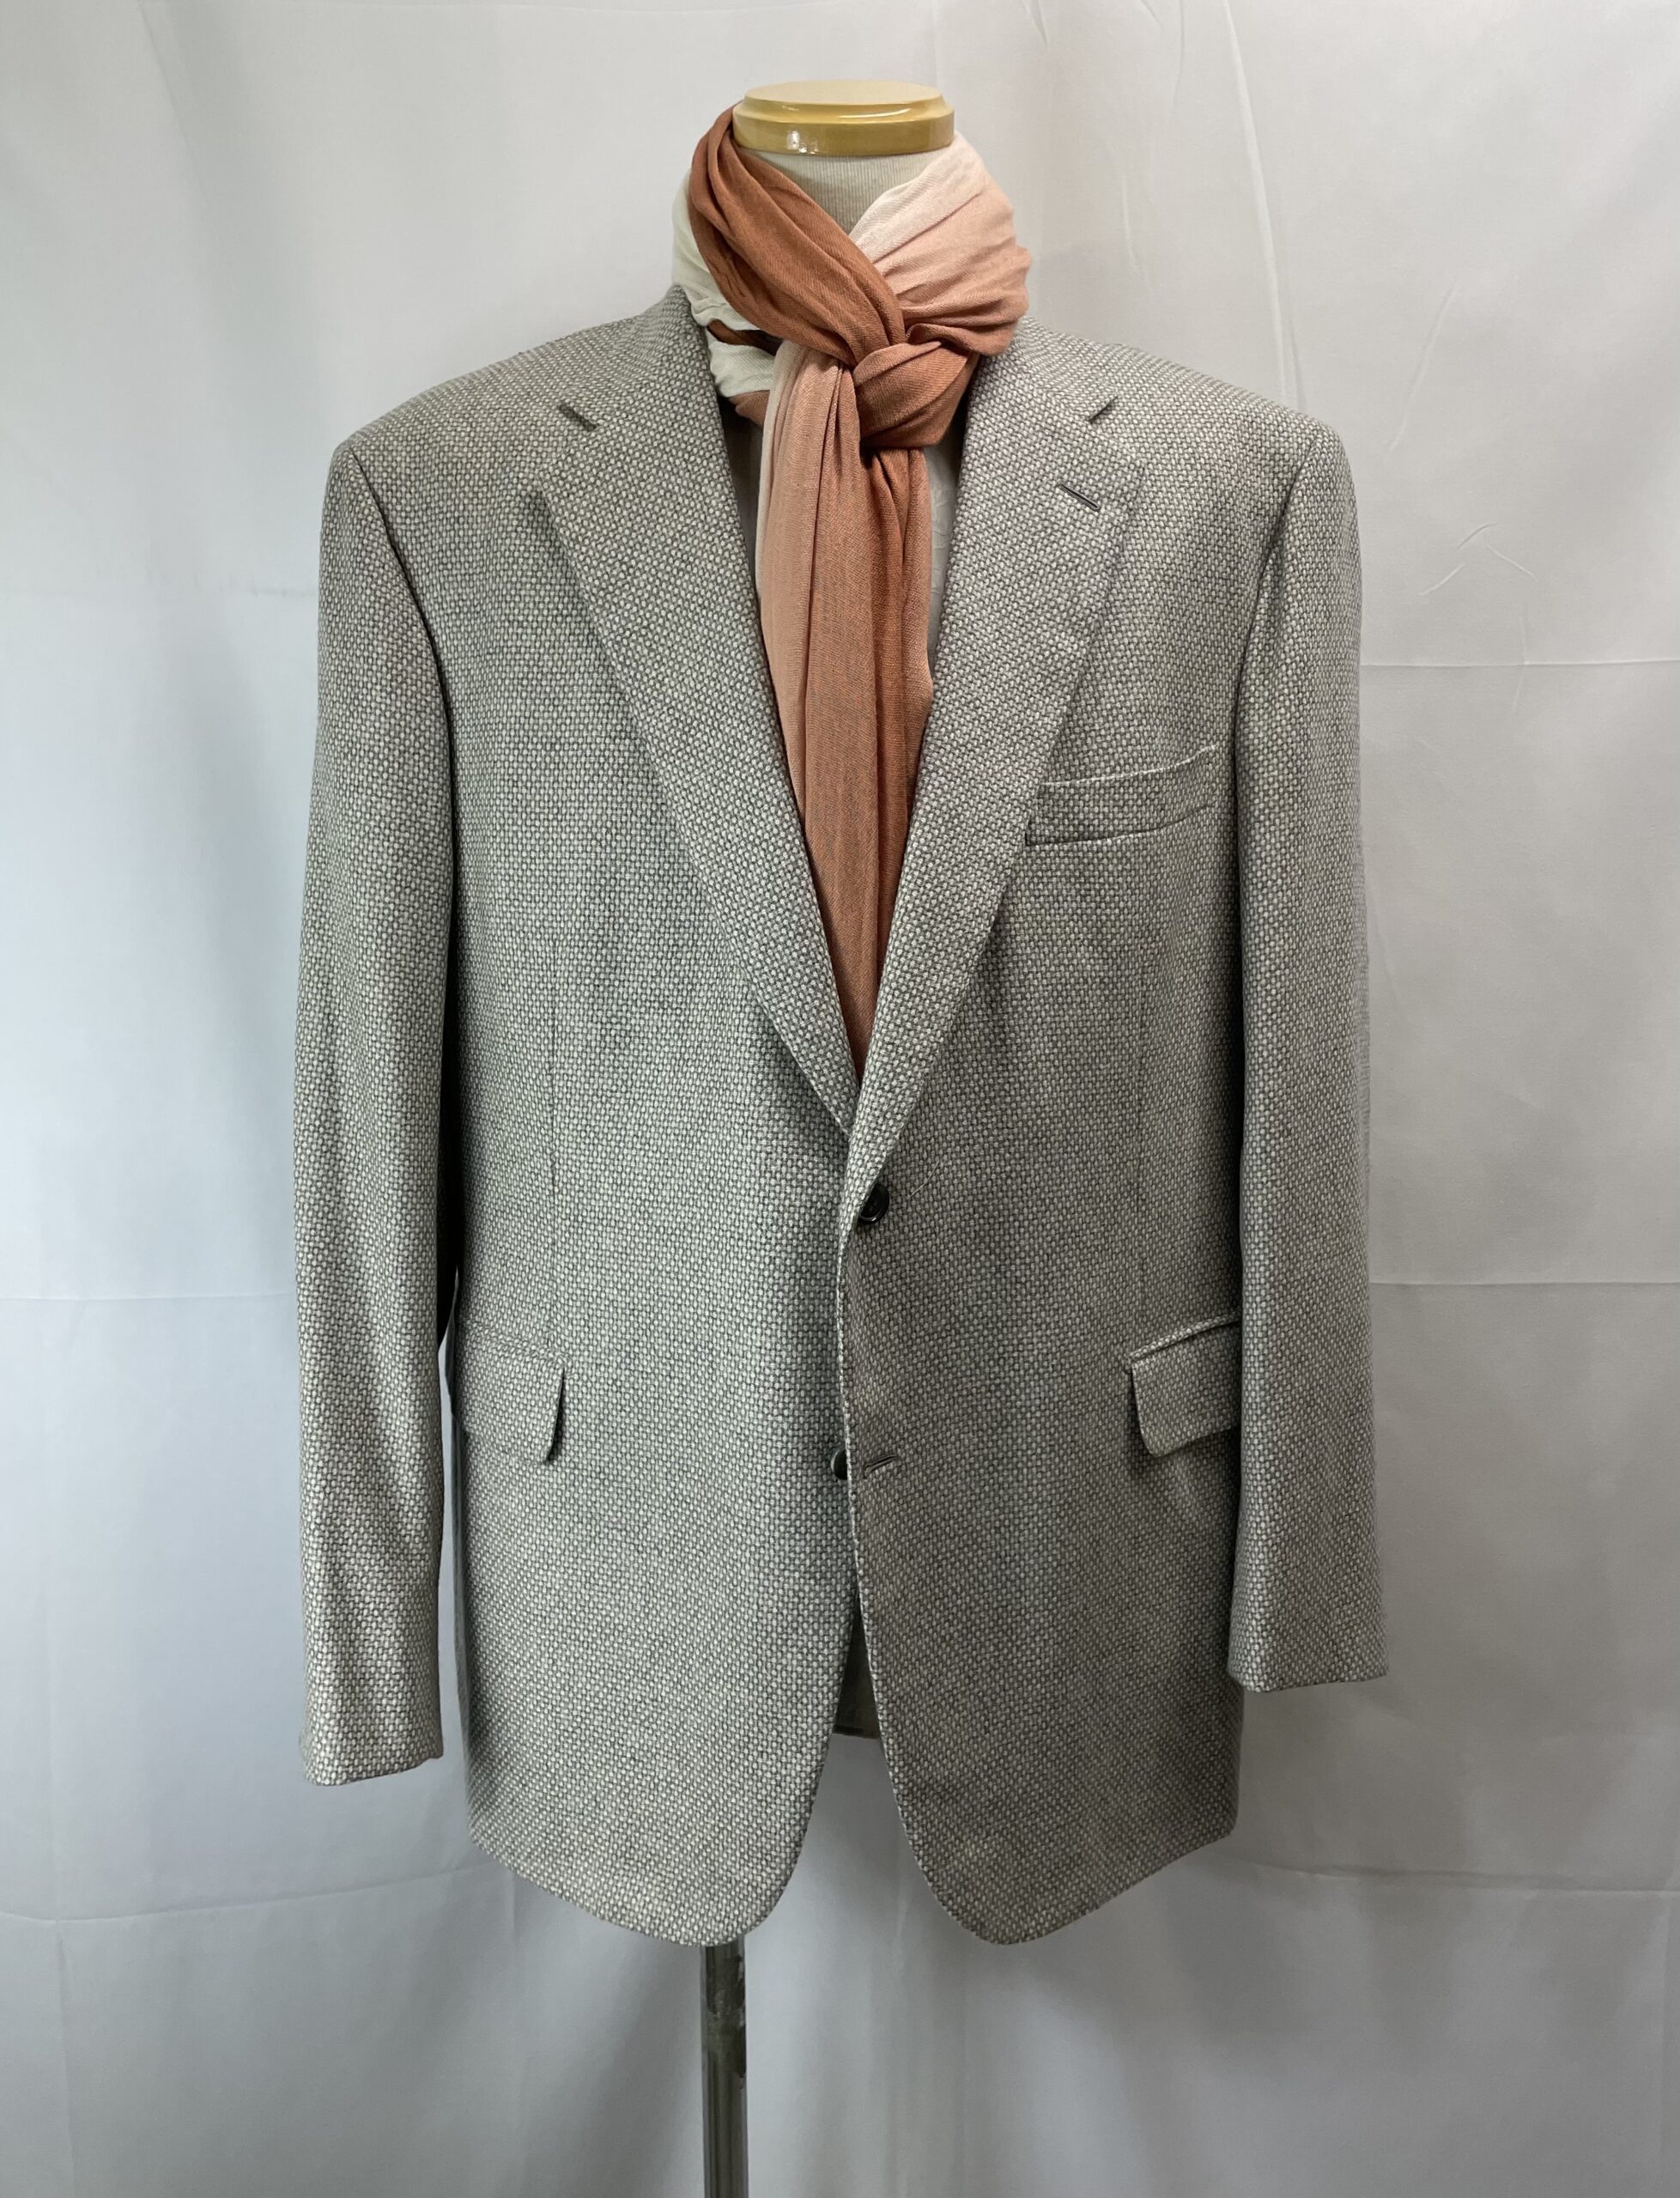 【ブリオーニ Brioni】合い物カシミヤ100%ジャガード織りジャケット 58 薄灰色